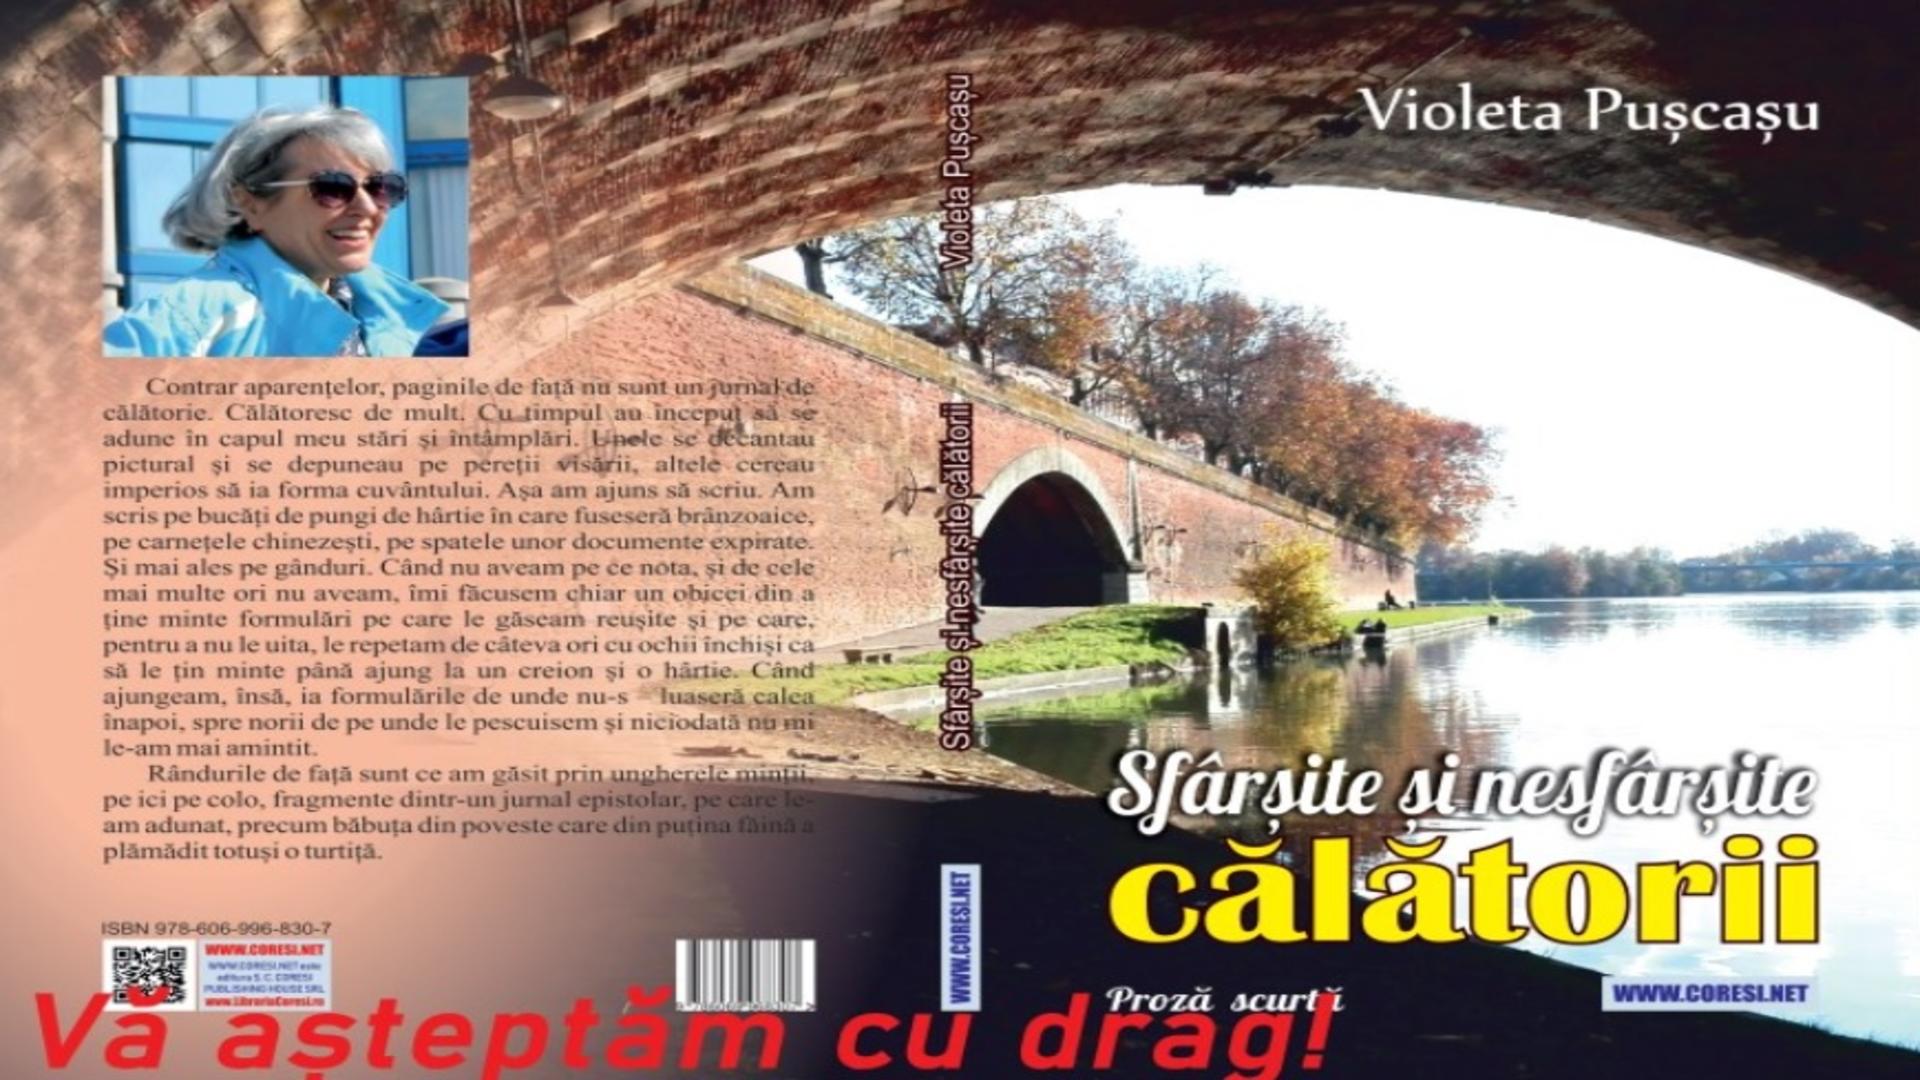 "Sfârșite și nesfârșite călătorii" - Violeta Pușcașu, lansare de carte